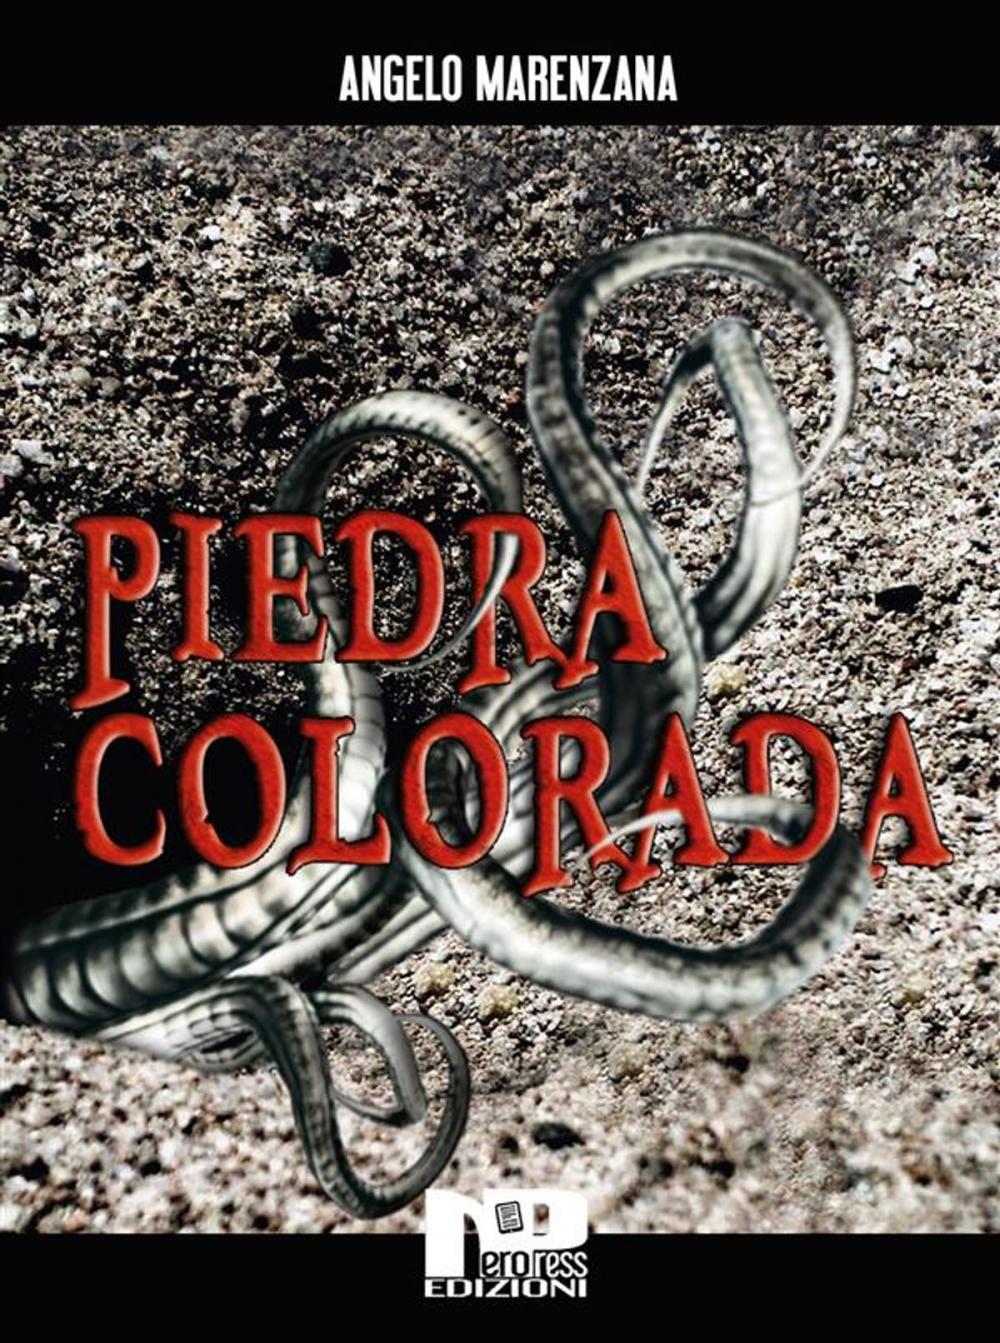 Big bigCover of Piedra colorada